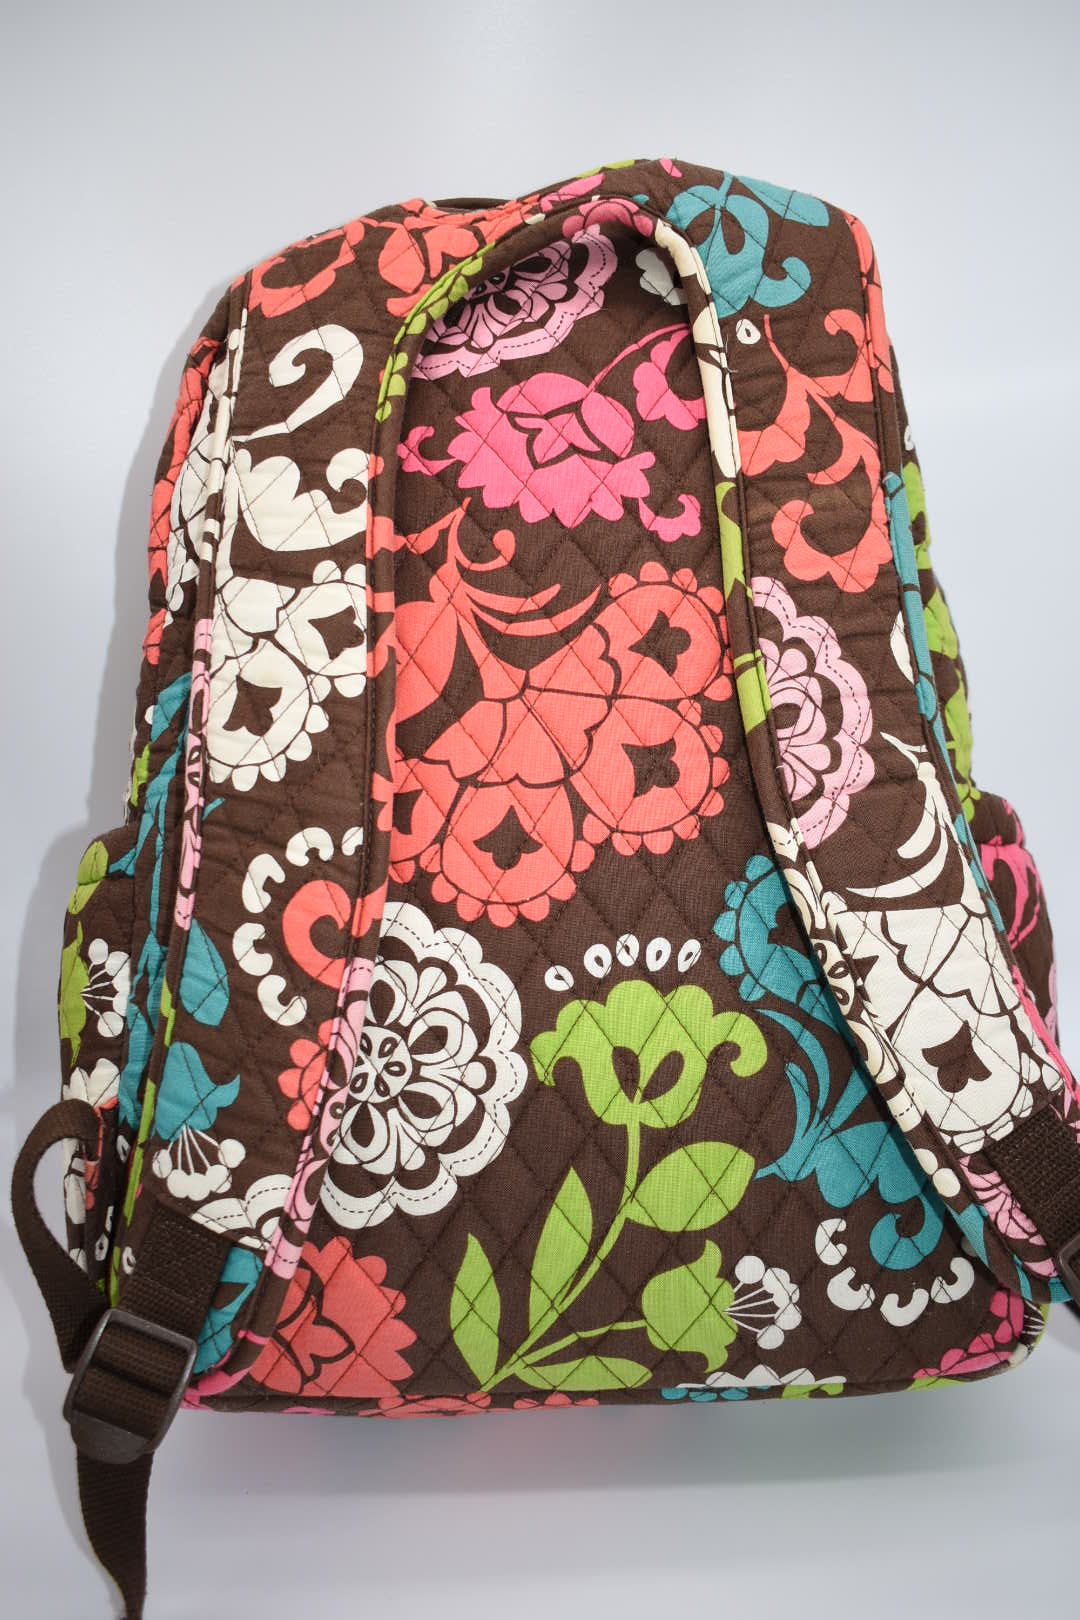 Vera Bradley Backpack Baby Bag in "Lola" Pattern